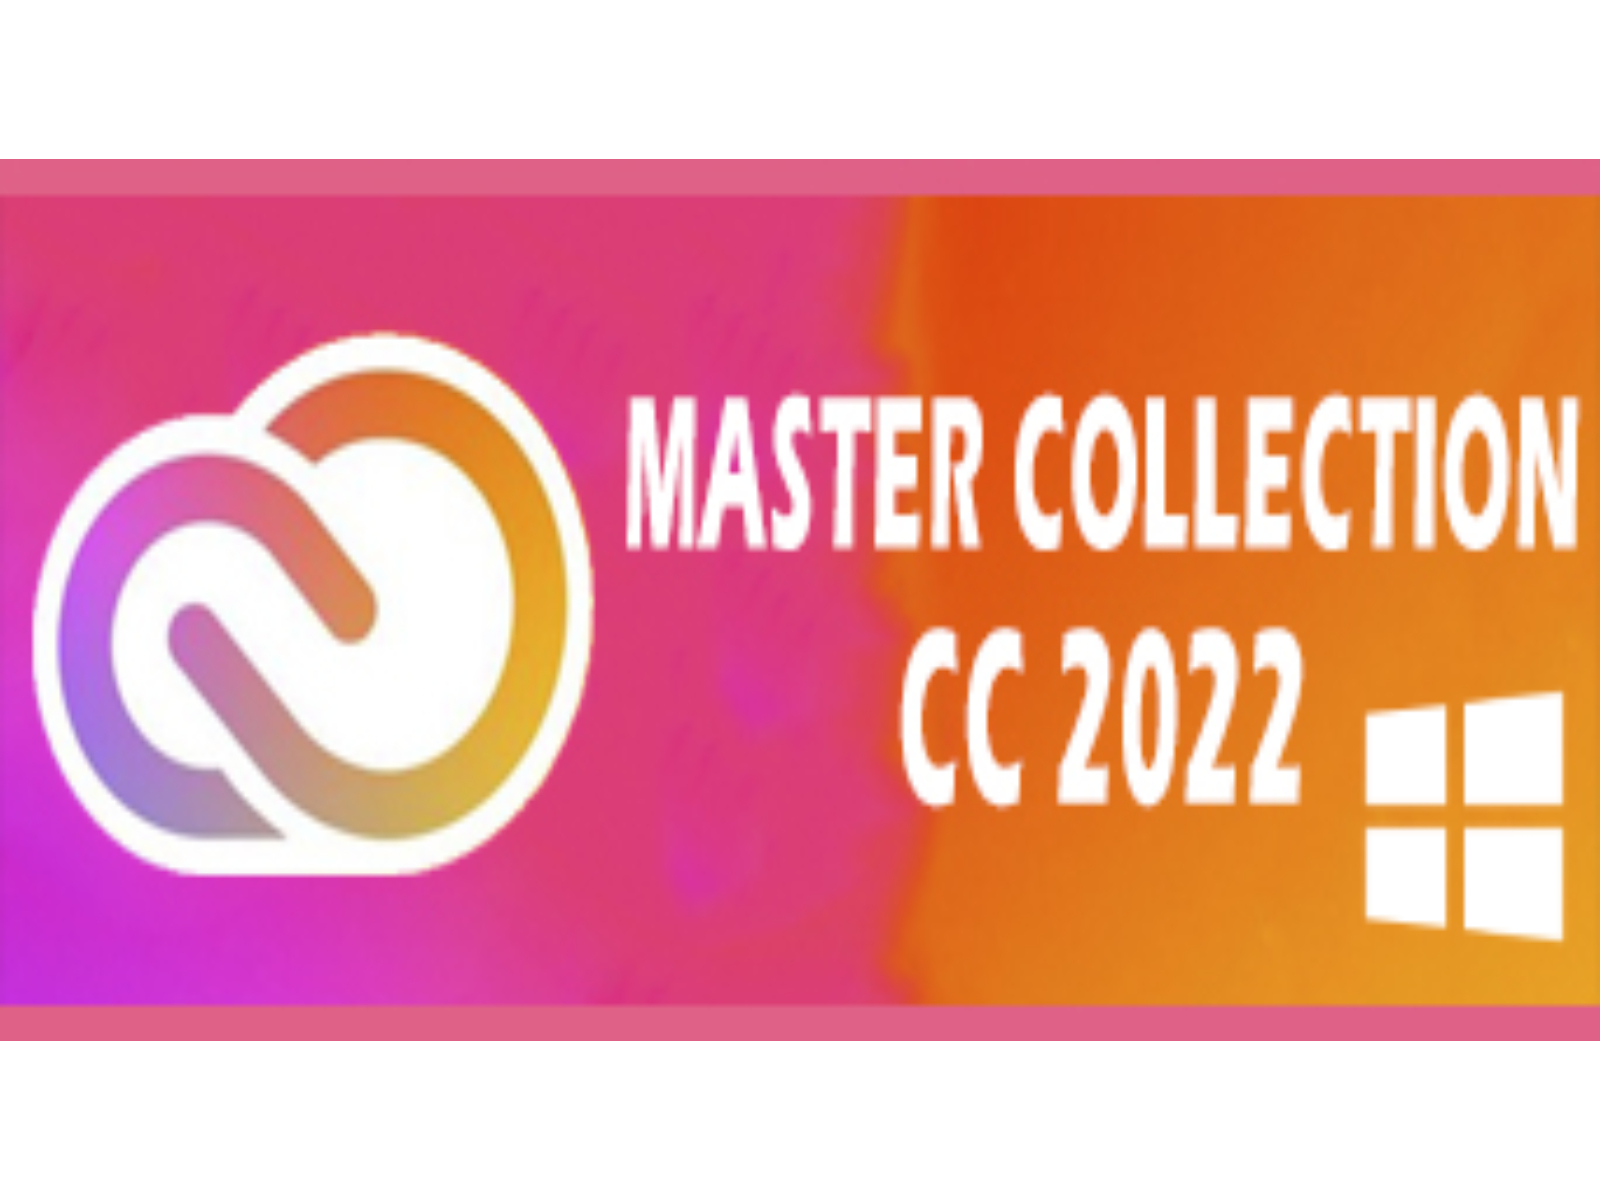 M‌a‌s‌t‌er‌ Collection ‌C‌C‌ ‌2‌0‌2‌2‌ ‌W‌i‌n‌d‌o‌w‌s‌ - Lifetime